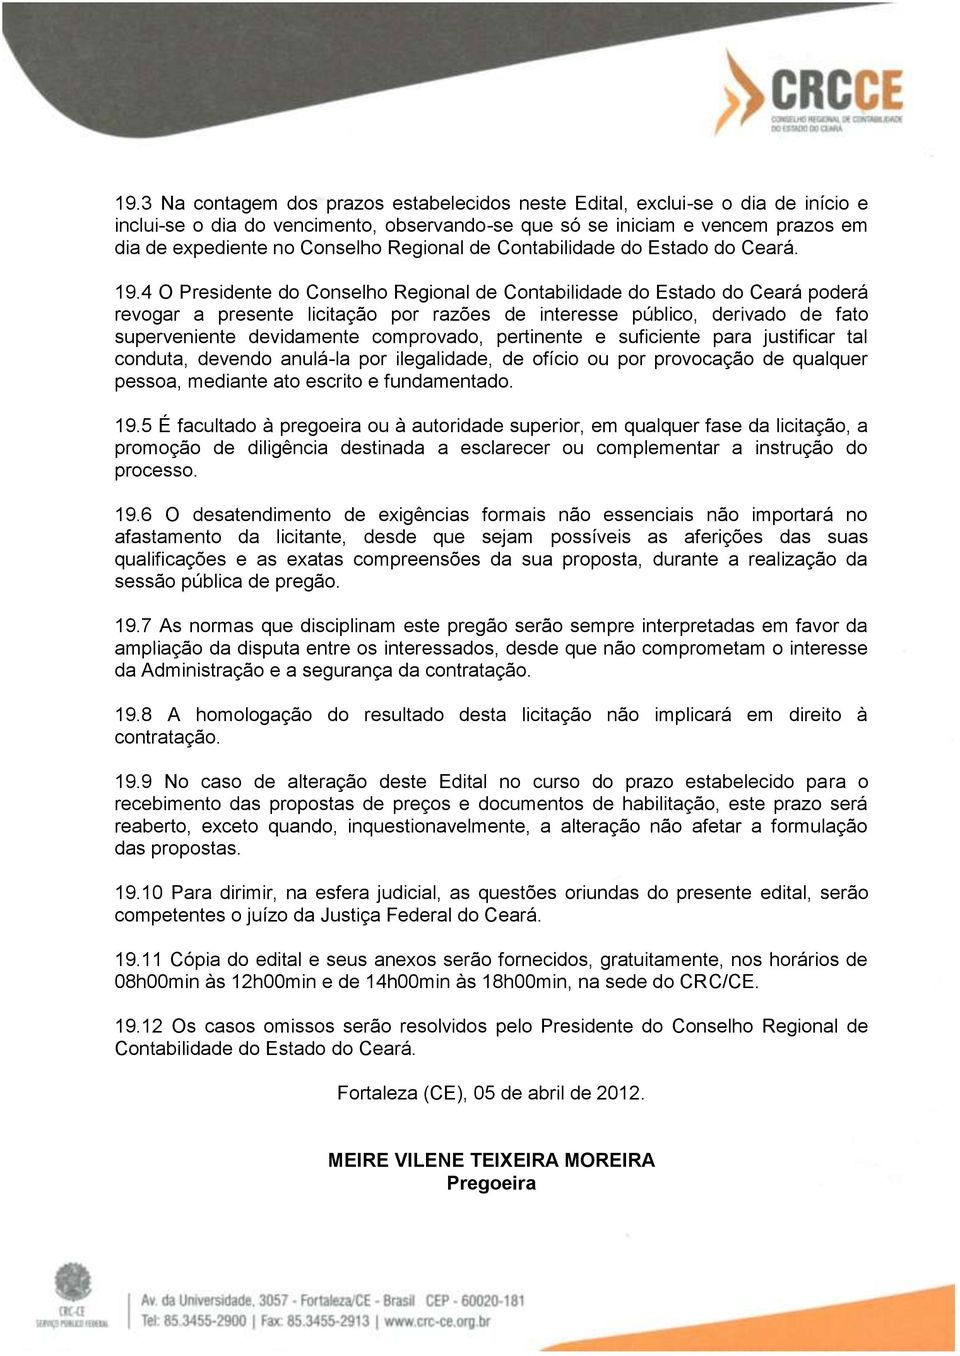 4 O Presidente do Conselho Regional de Contabilidade do Estado do Ceará poderá revogar a presente licitação por razões de interesse público, derivado de fato superveniente devidamente comprovado,